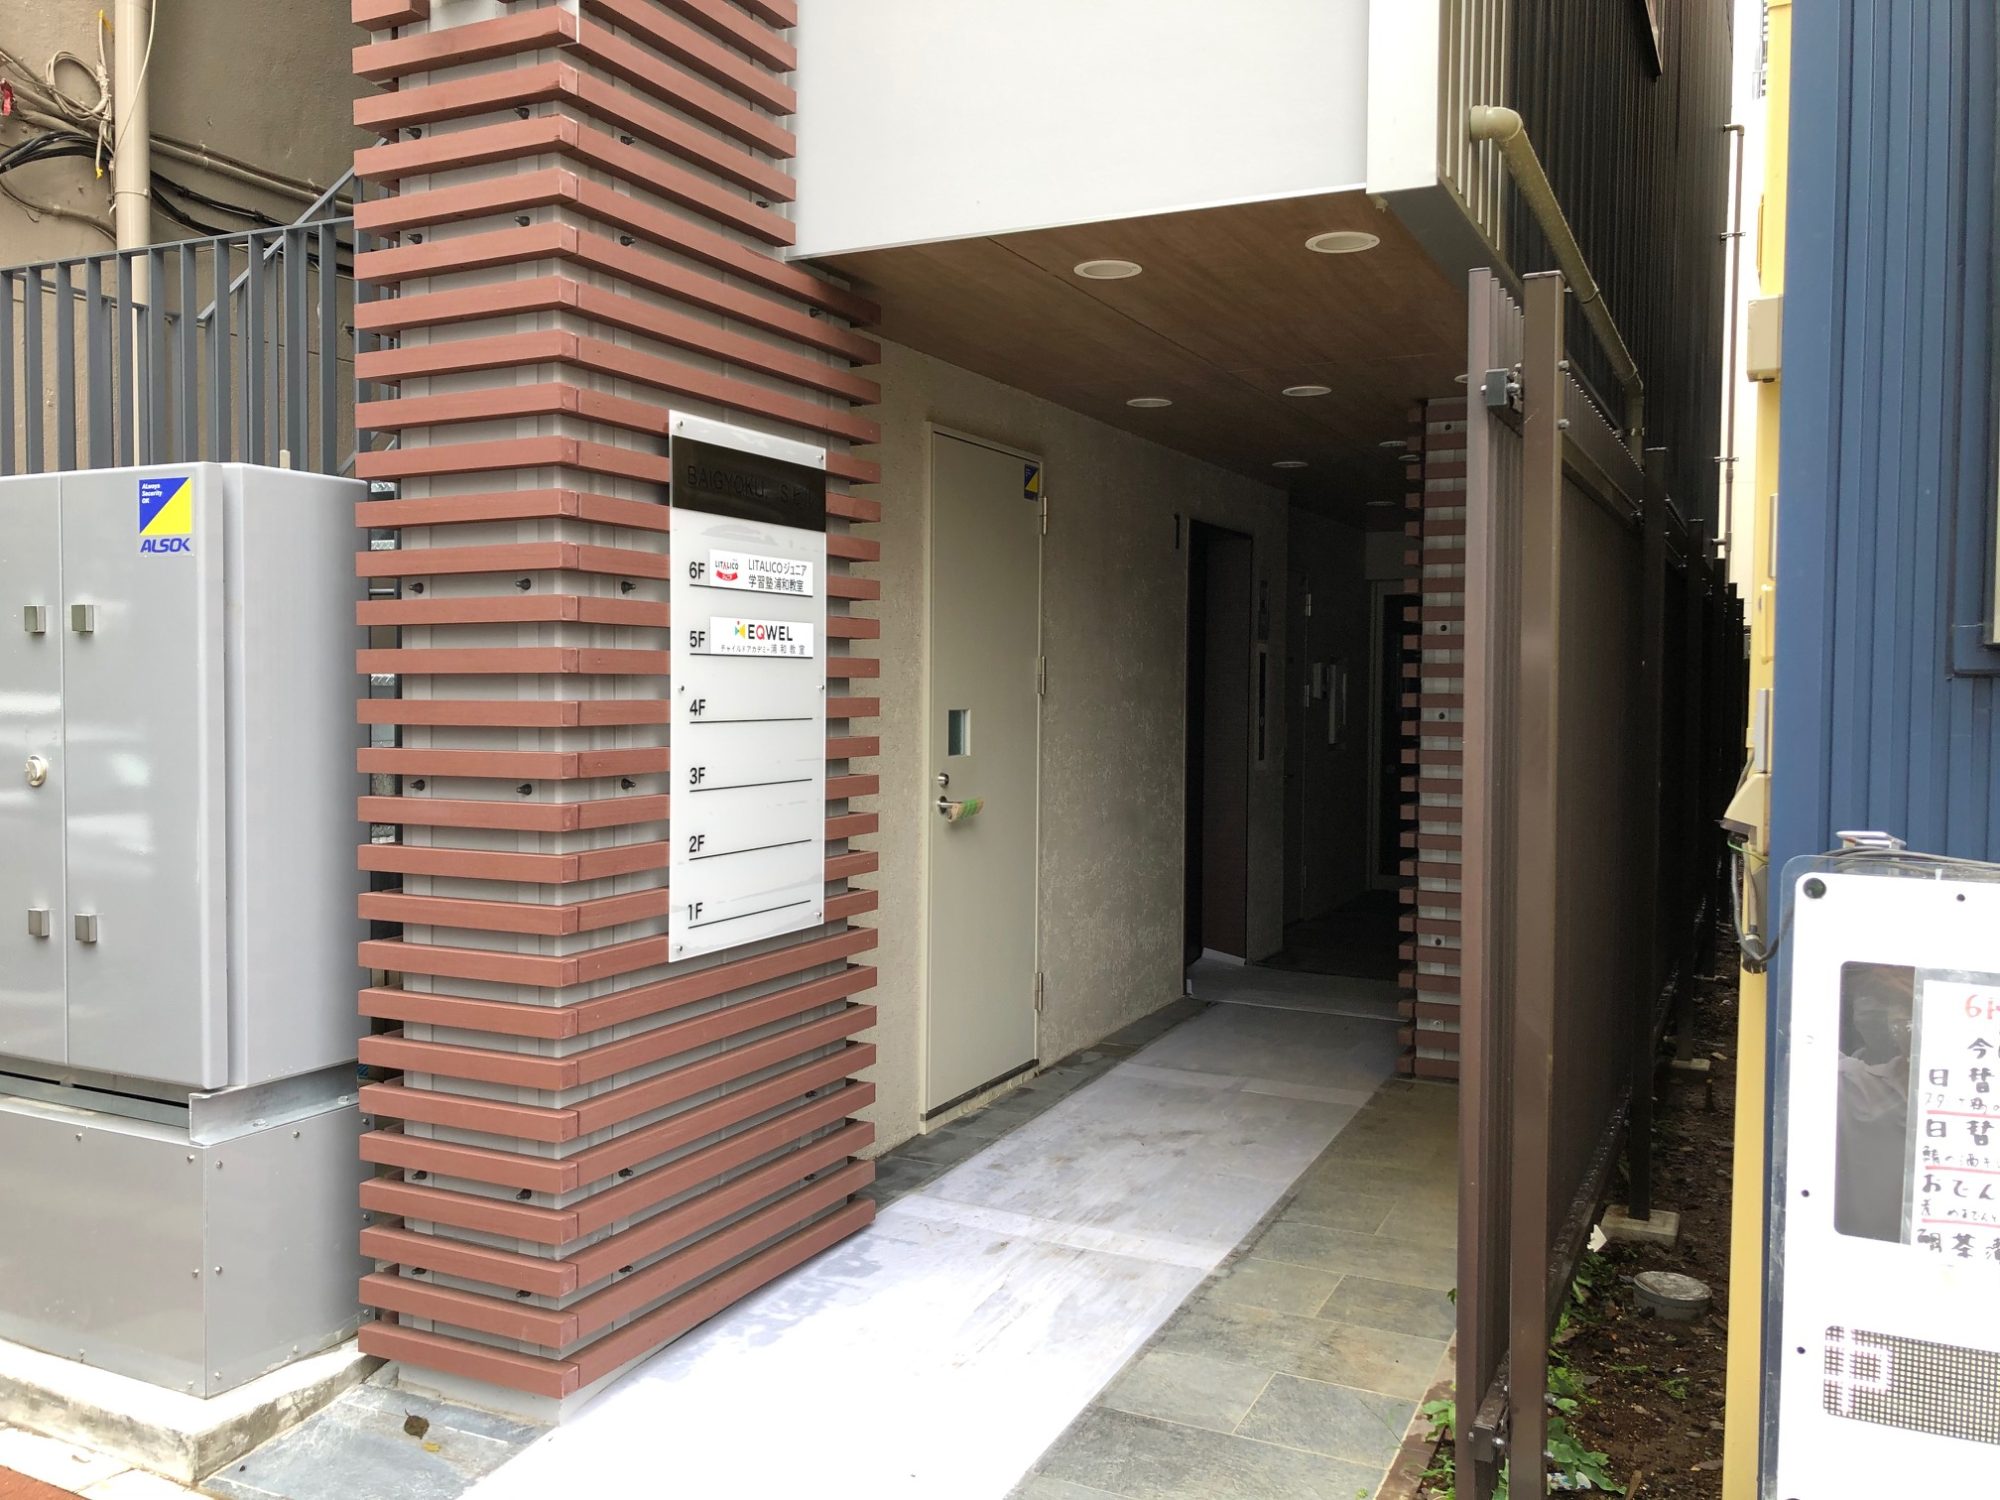 浦和西口・梅玉跡地に建てられた６階建て雑居ビルの入口